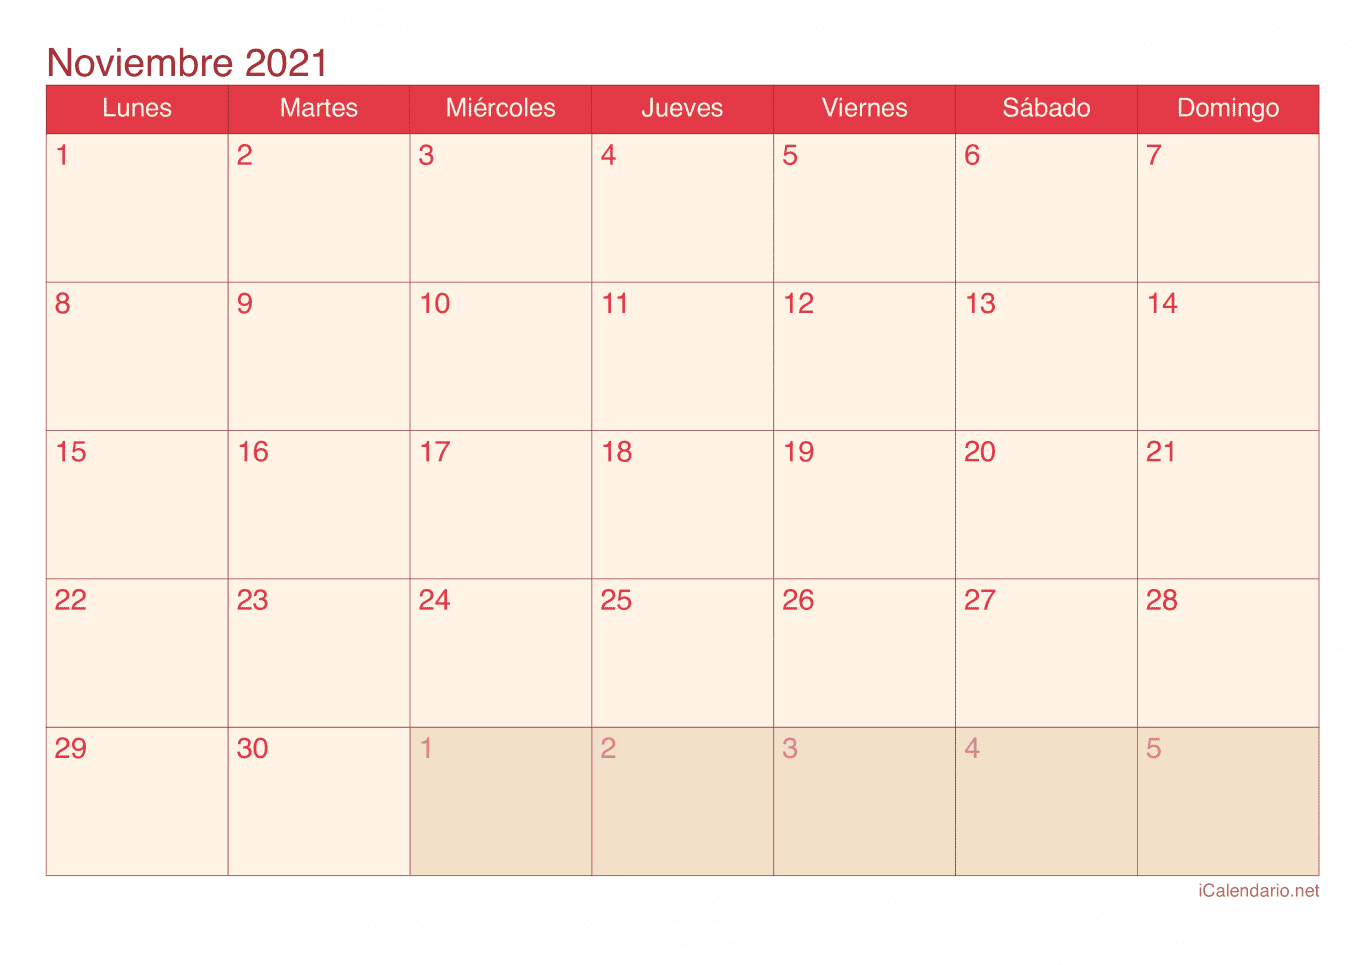 Calendario de noviembre 2021 - Cherry